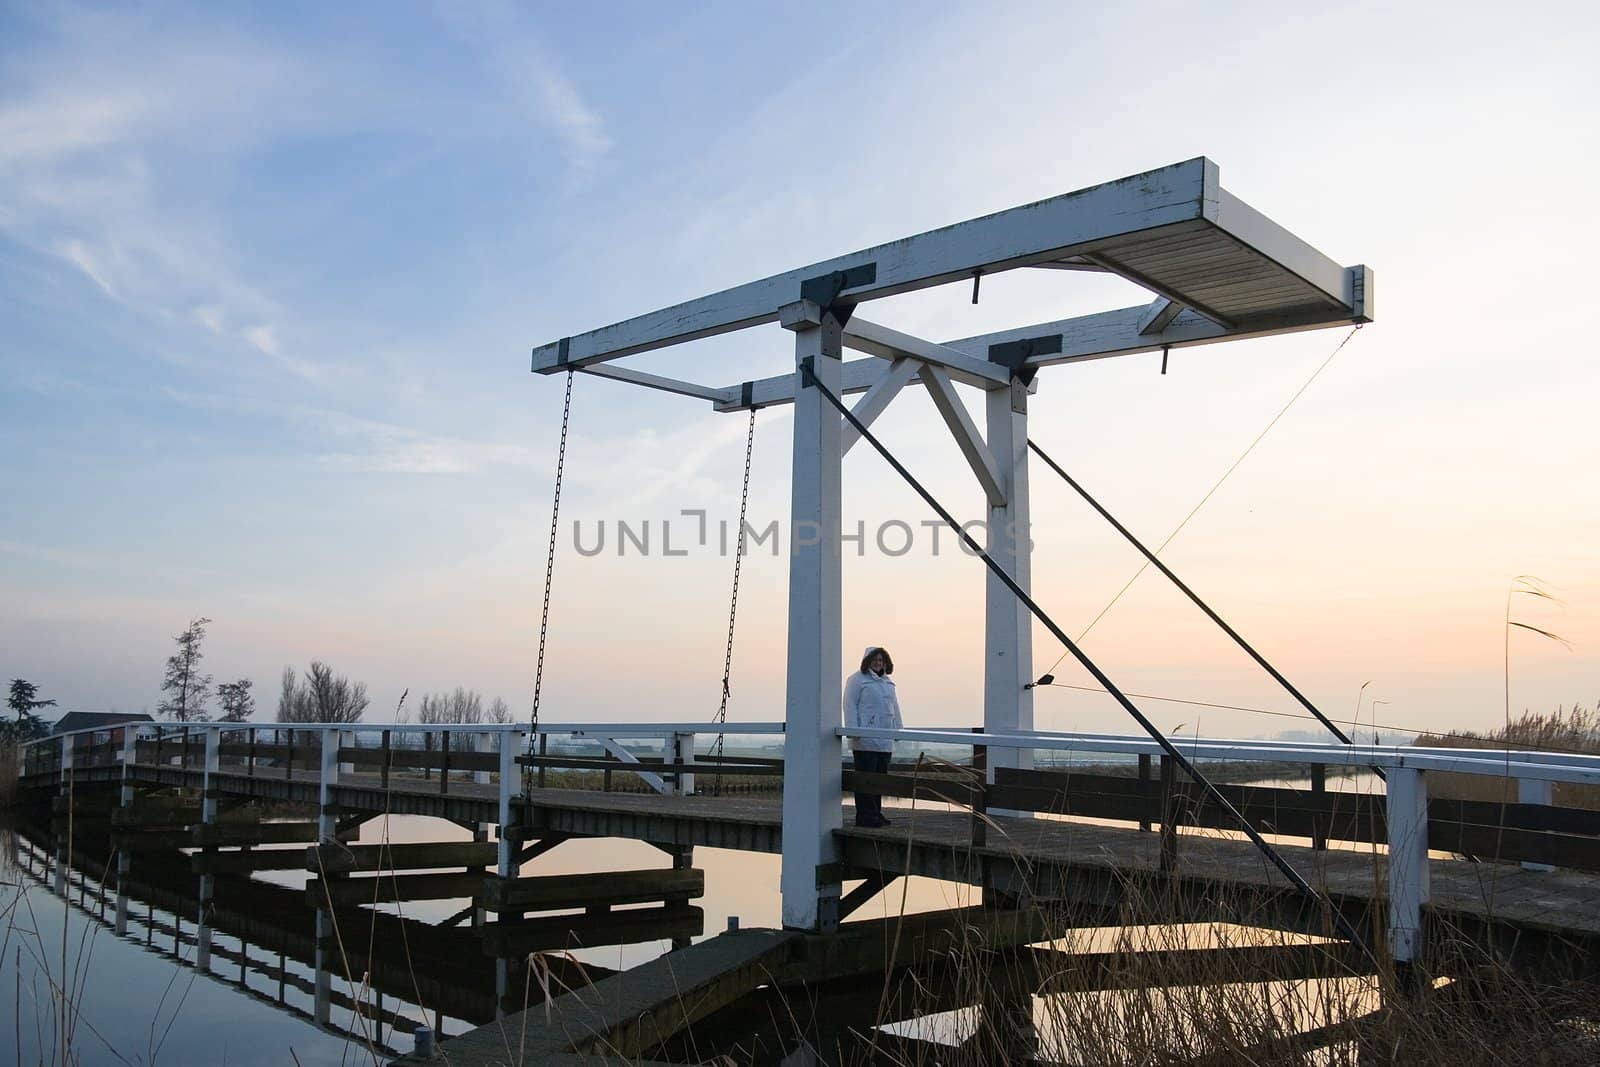 Dutch wooden lift-bridge by Colette